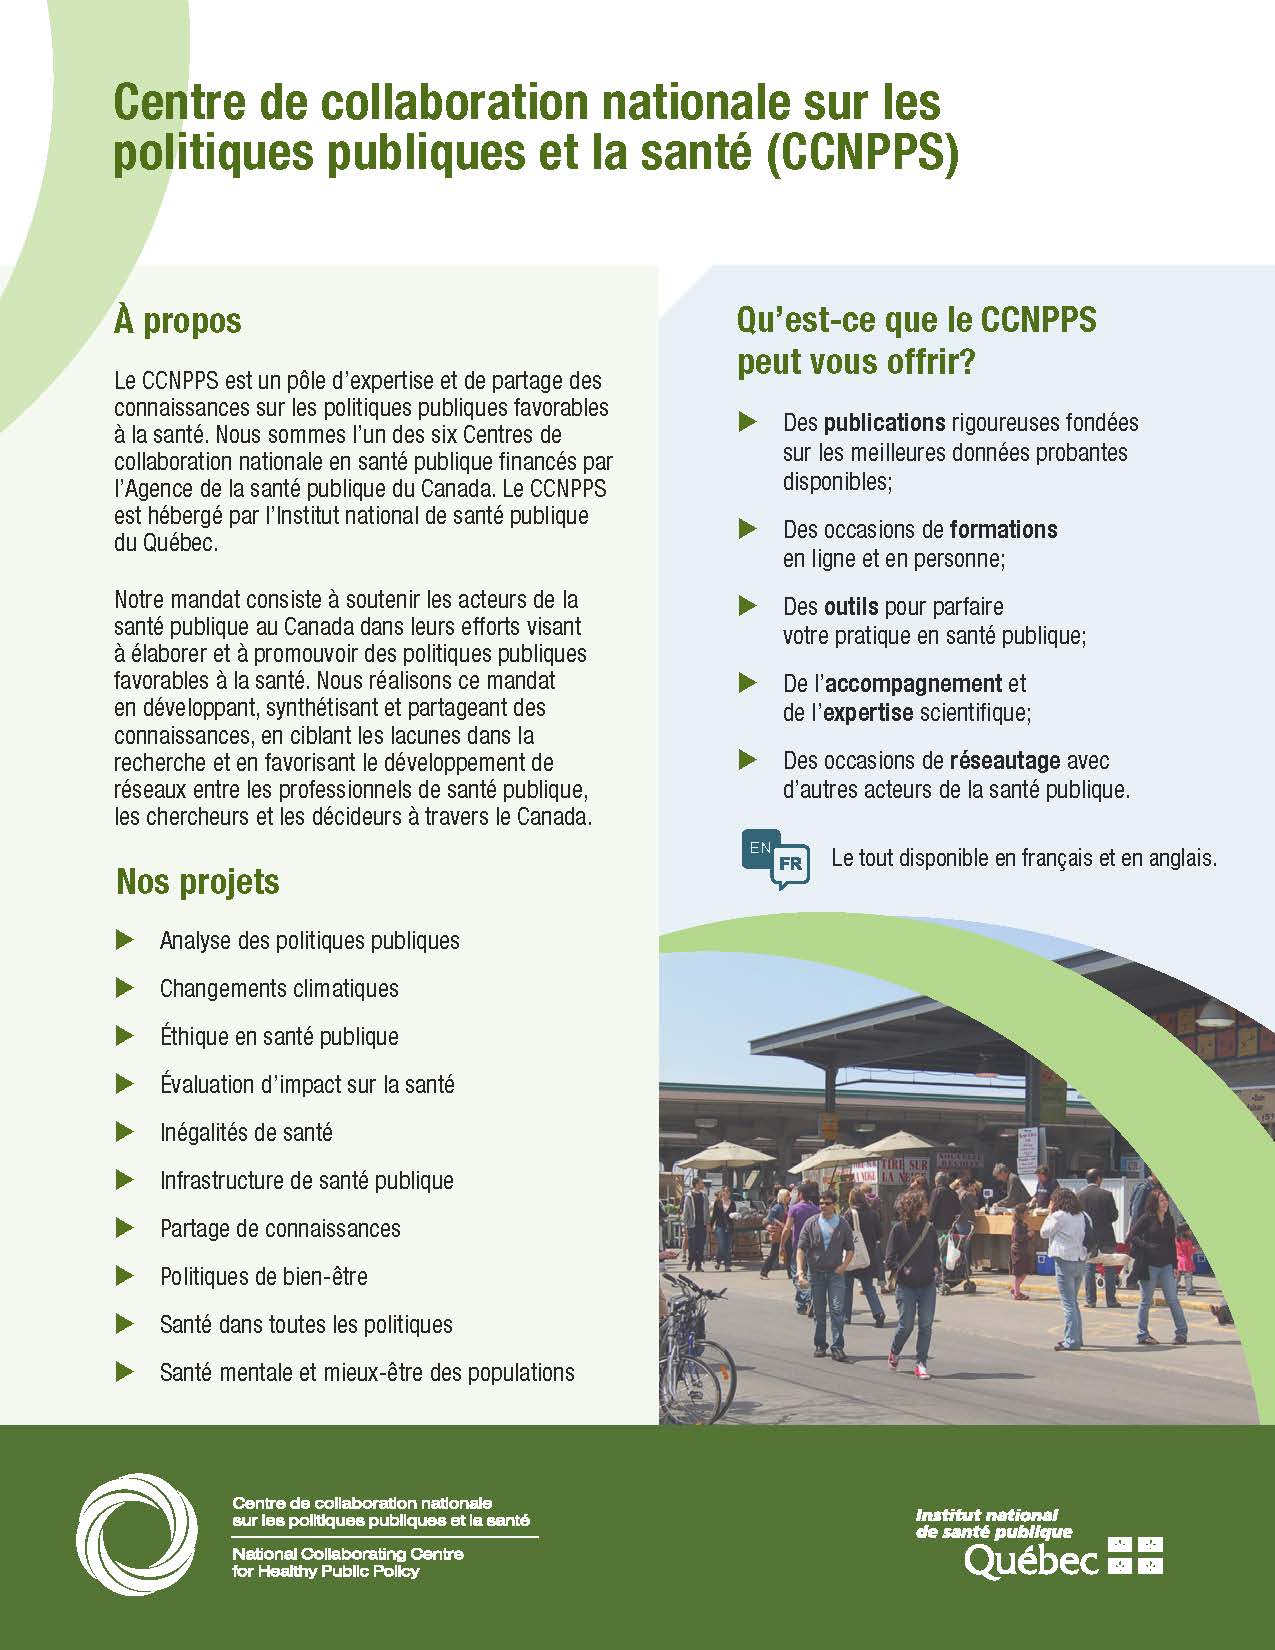 Image de la brochure qui décrit l'offre de services du CCNPPS.